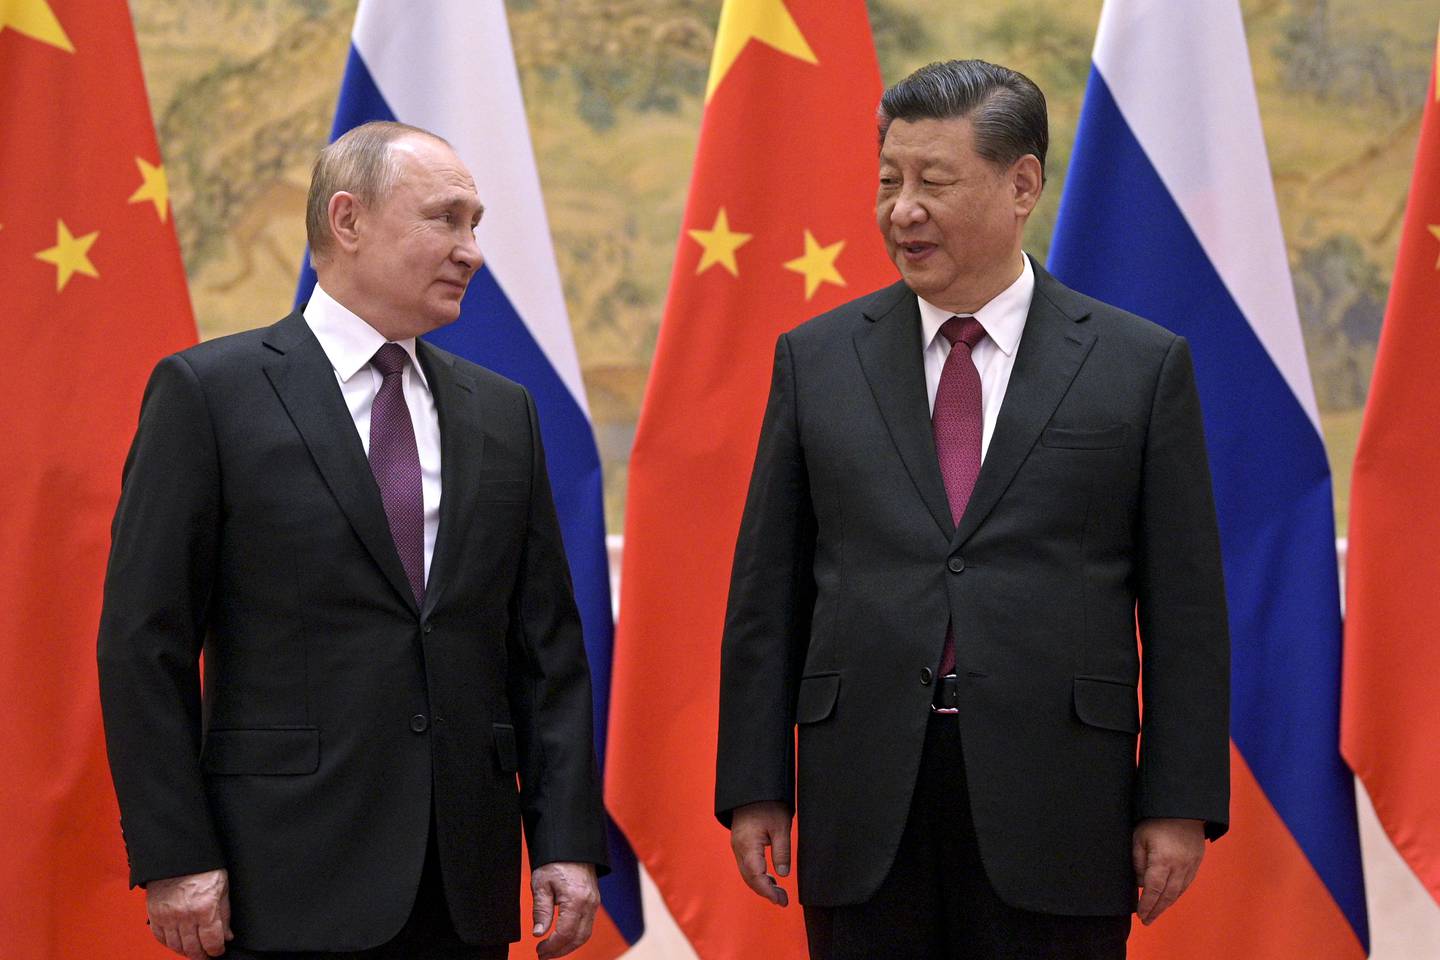 Xi JInping og Vladimir Putin, ser på hverandre, begge stående i svart dress, med slips, foran det russiske og kinesiske flagget.